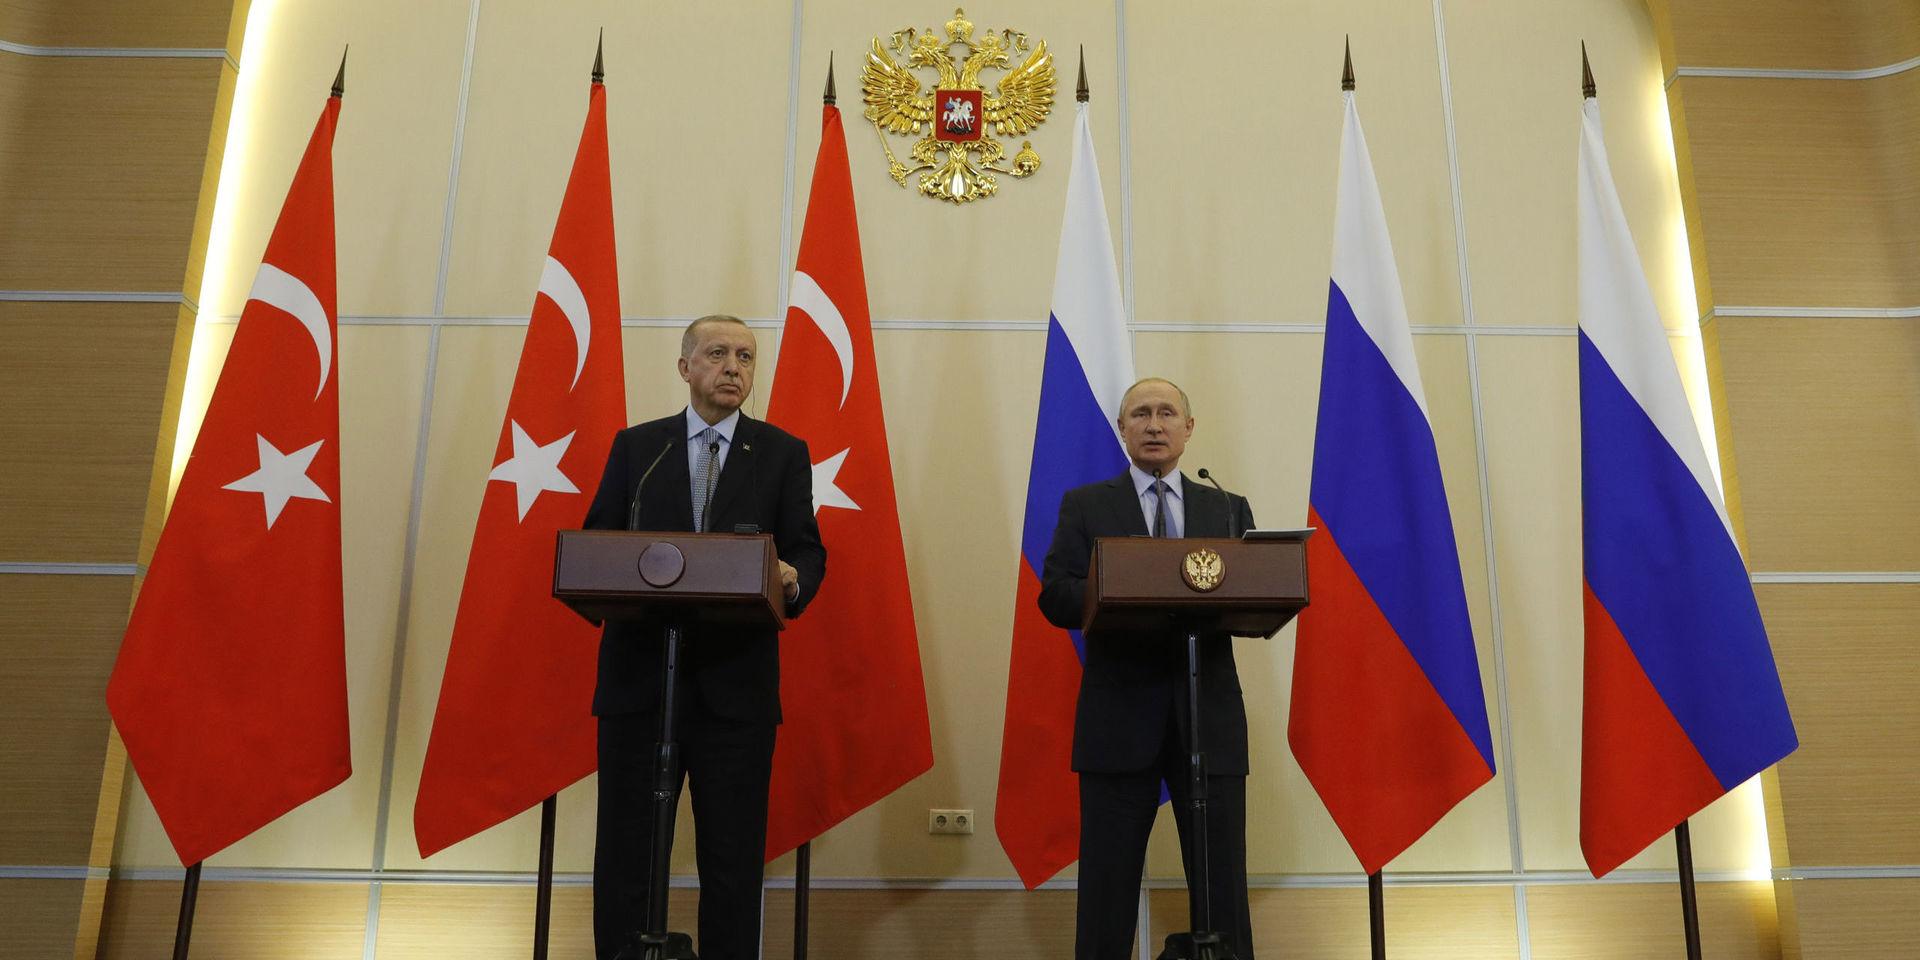 Ryssland och Turkiet har kommit överens om att syriska gränspatruller och rysk militärpolis gemensamt ska bevaka den syriska gränsen förutom de områden där turkisk militär är aktiv.